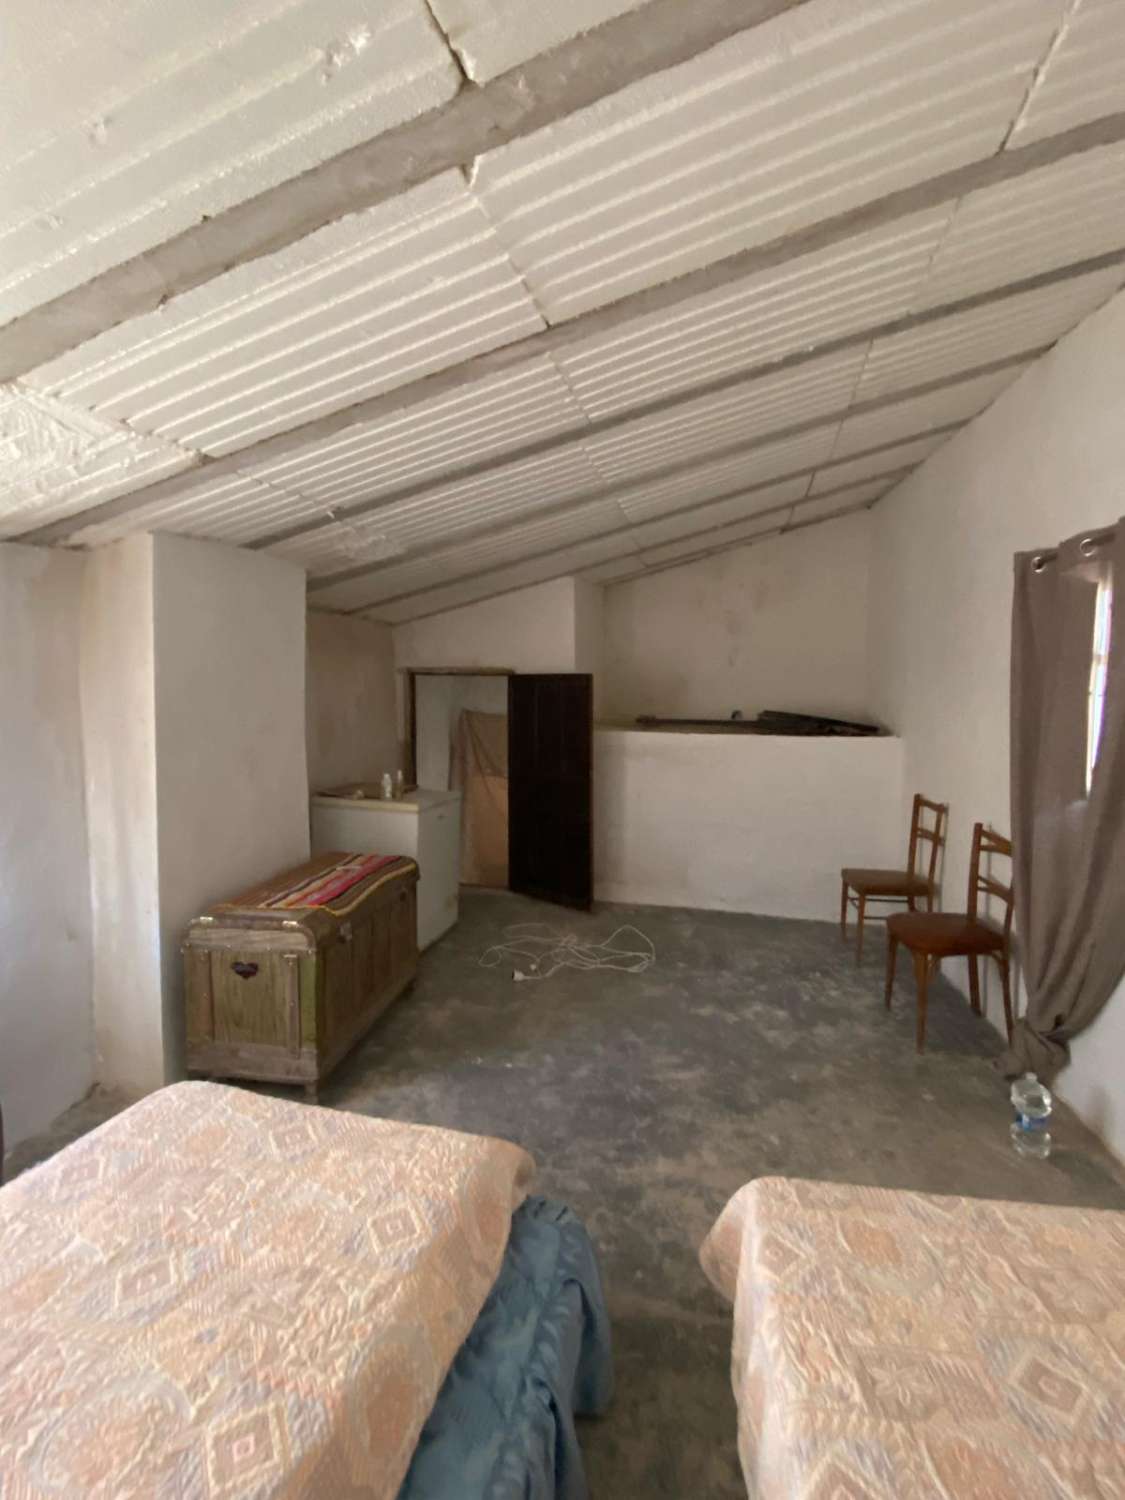 Casa de 3 dormitorios en el pueblo de Vélez Blanco con amplio espacio exterior